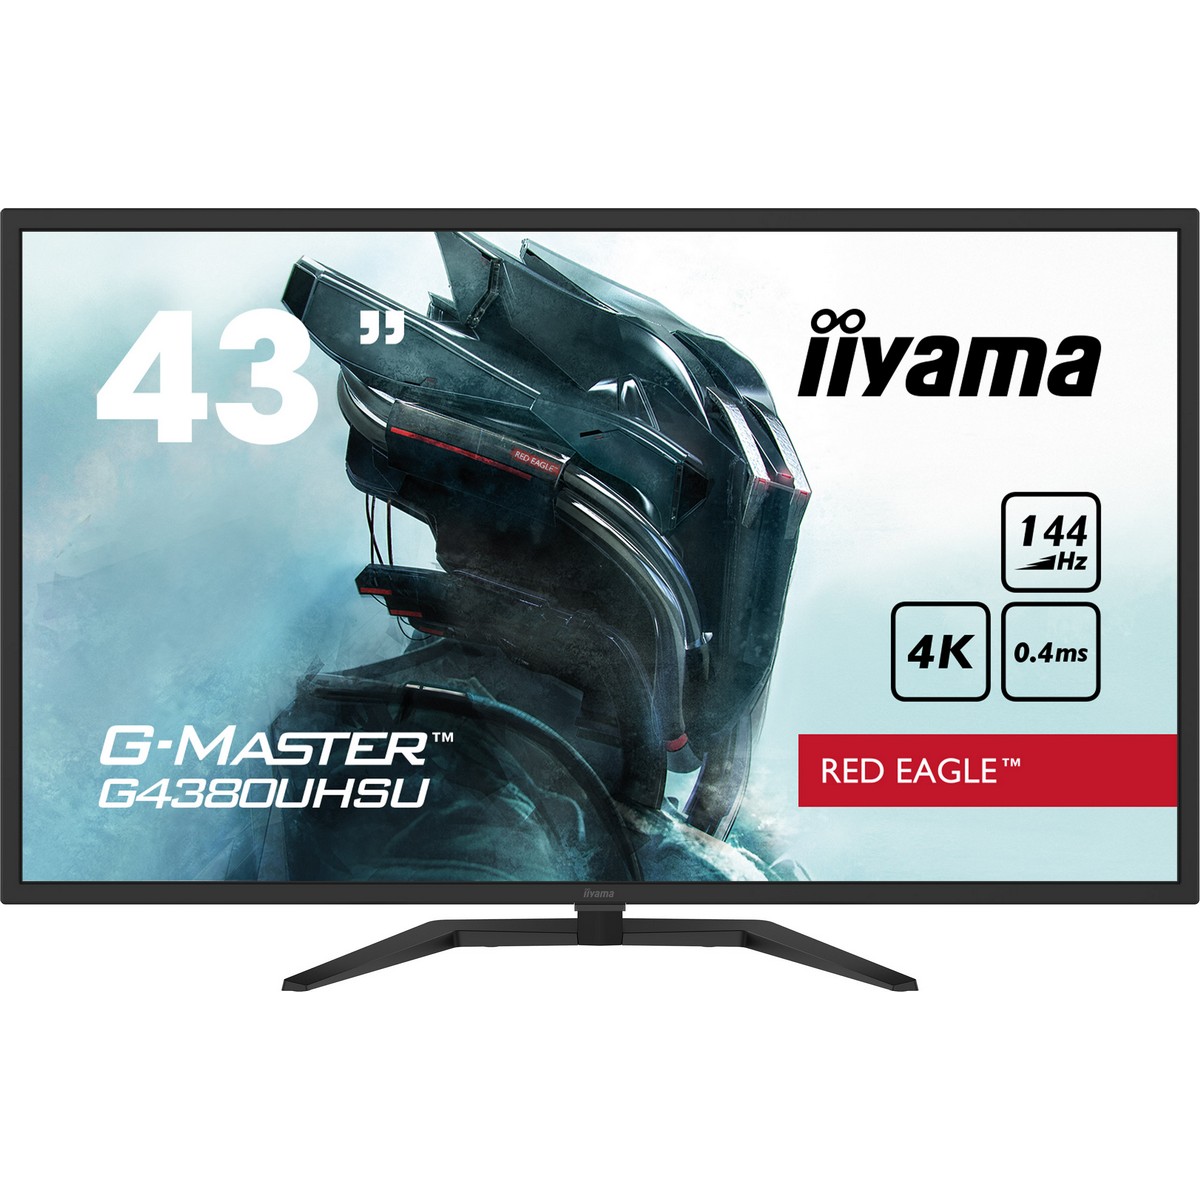 iiyama 43" G-Master G4380UHSU-B1 3840x2160 VA 144Hz 0.4ms FreeSync Widescreen Gaming Monitor